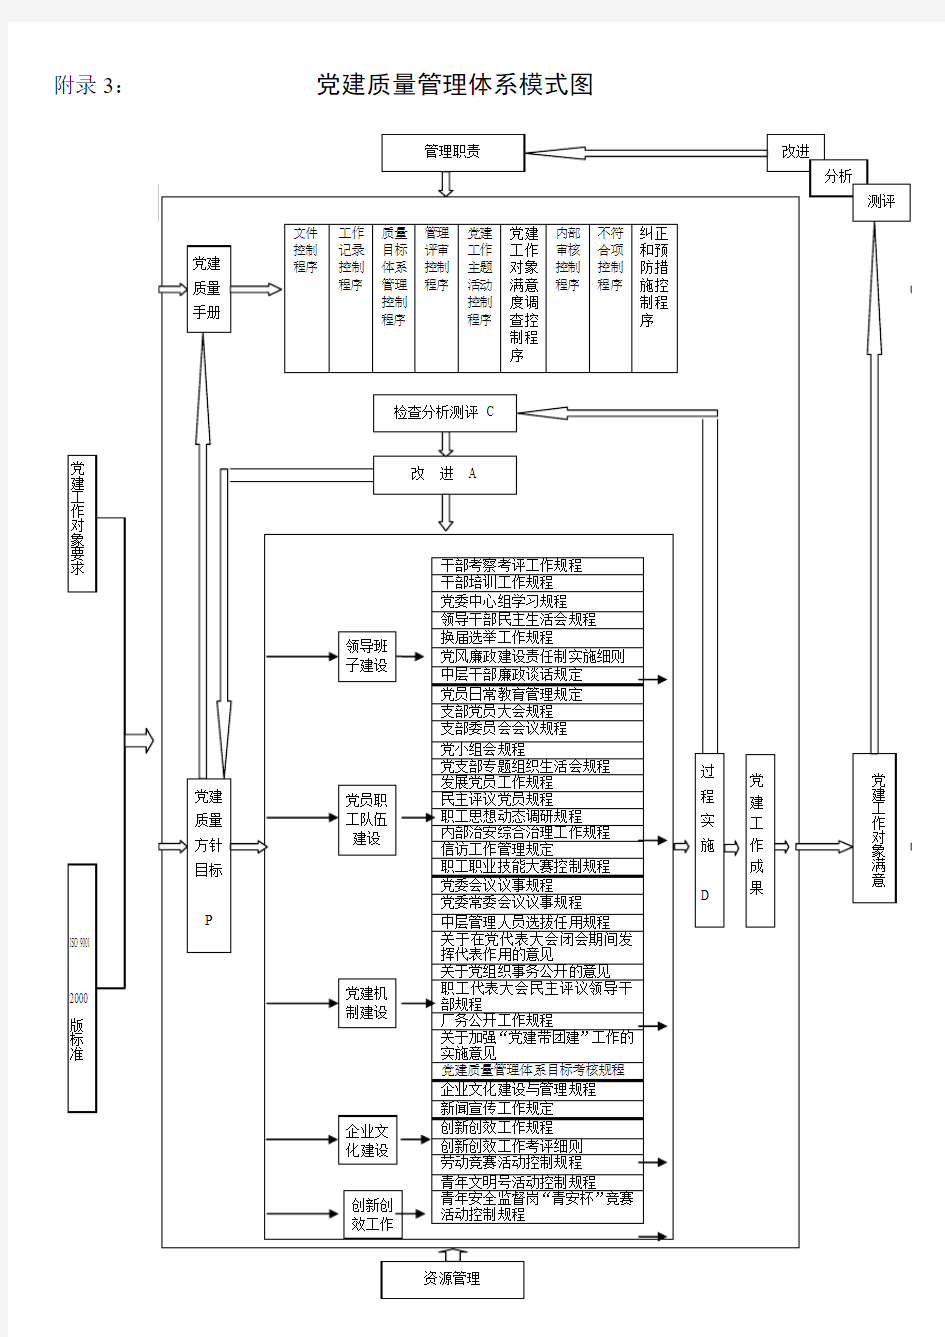 南钢公司党建质量管理体系模式图(A4换页)